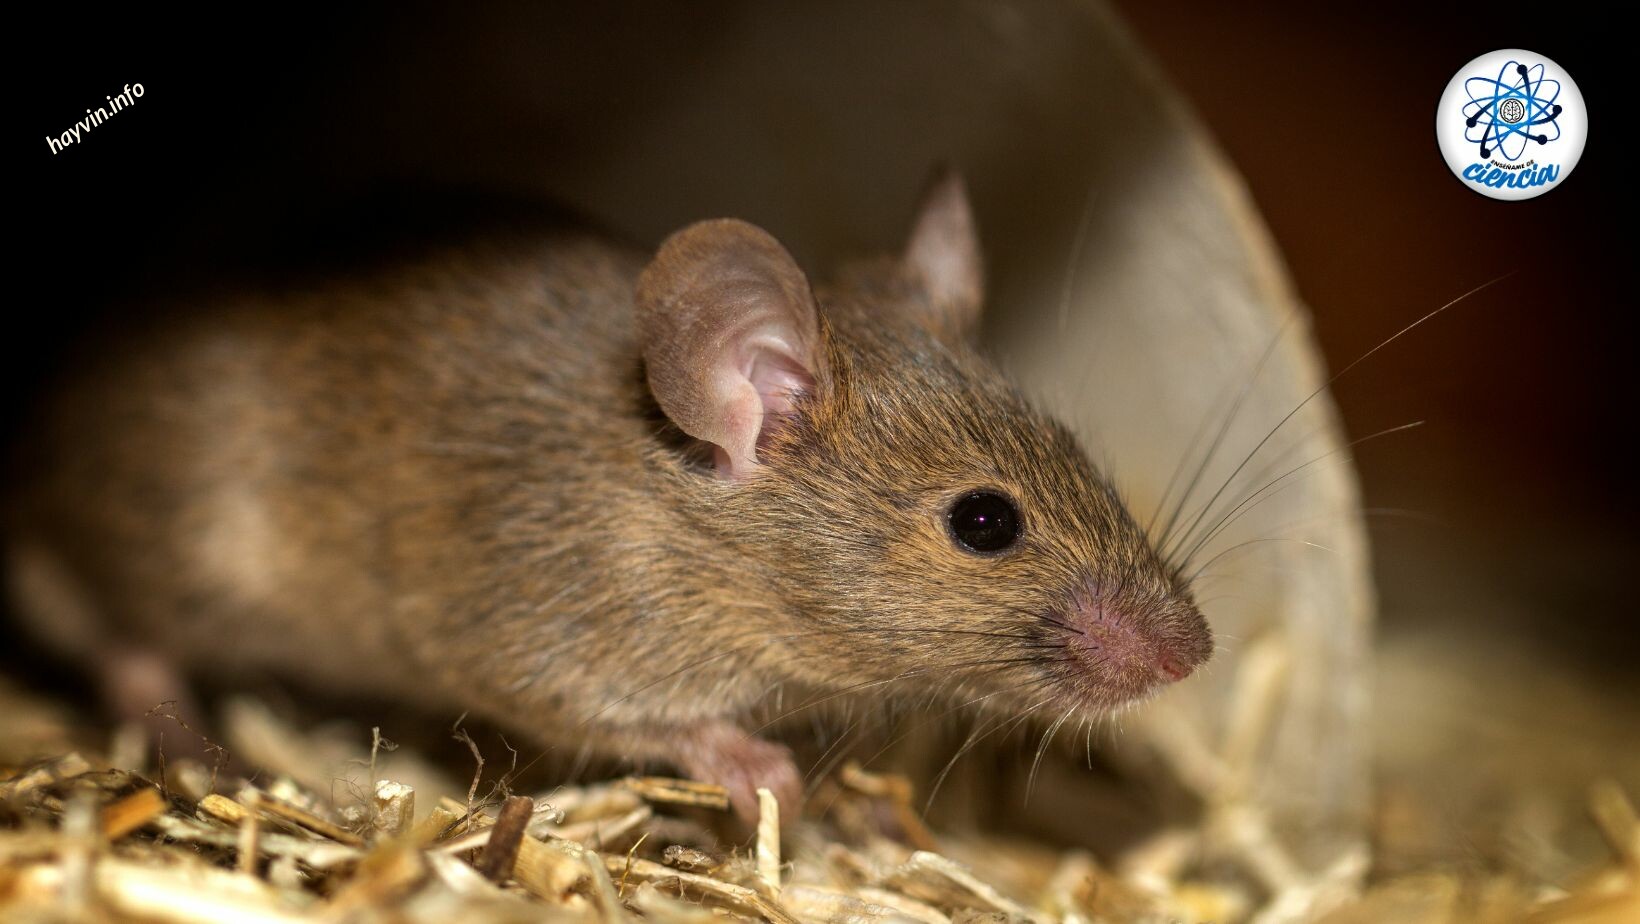 Így tudod gyorsan elriasztani az egereket a házadból méreg vagy csapdák használata nélkül